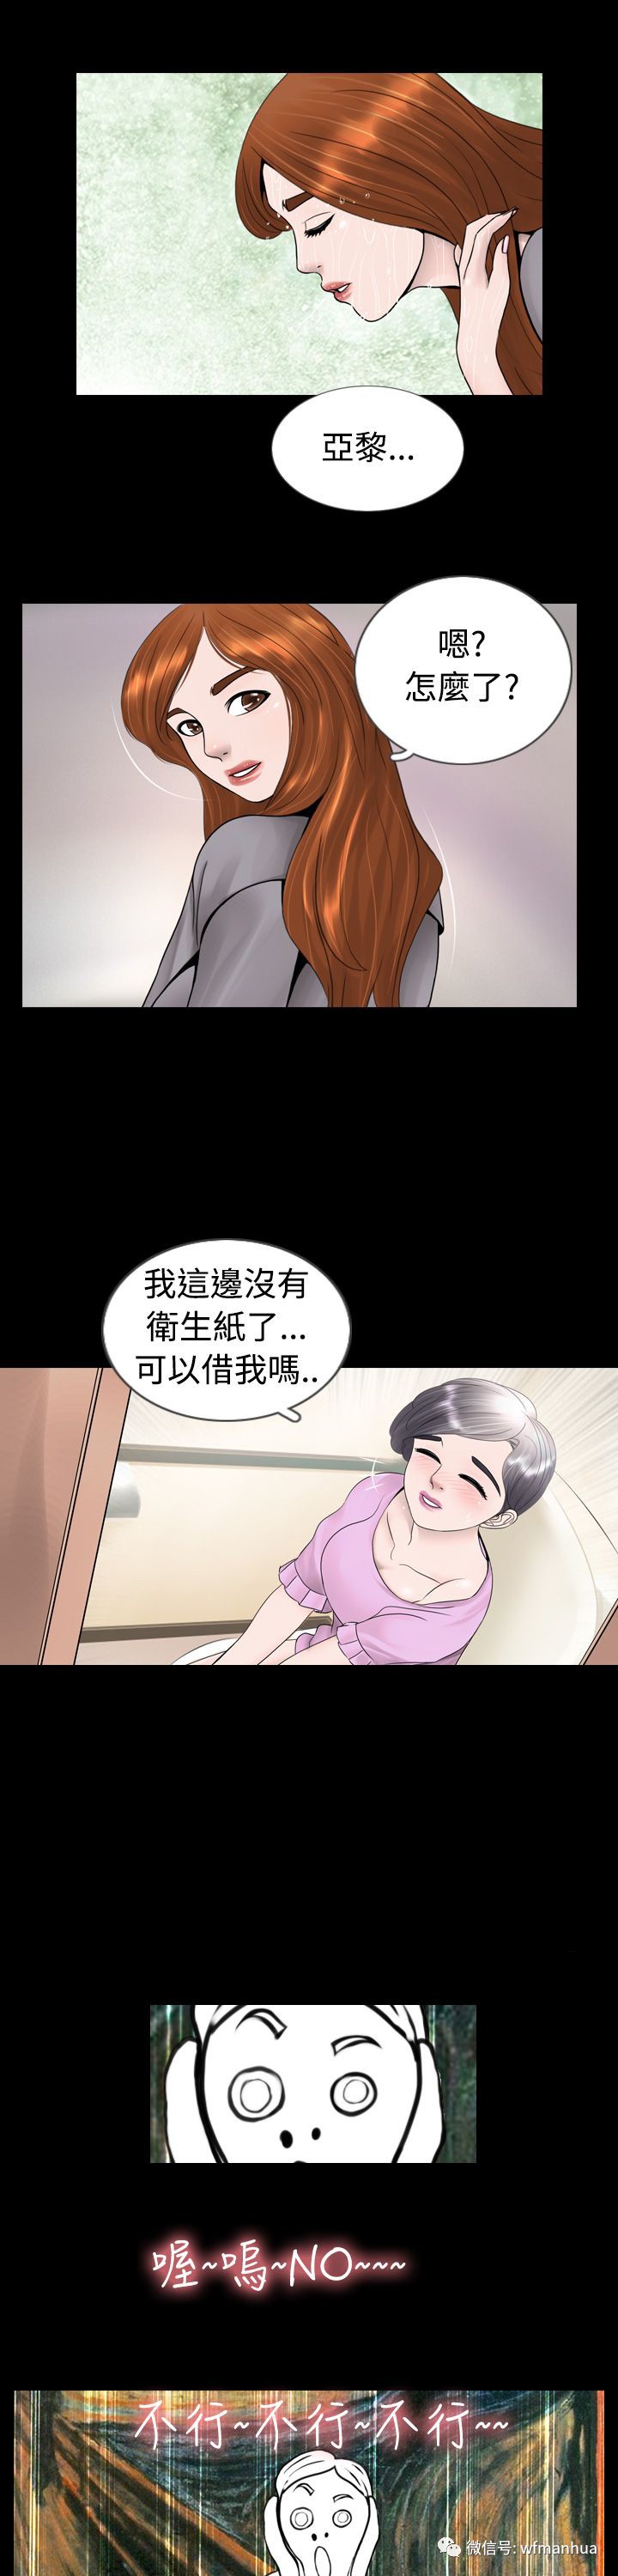 韩国漫画真假姐弟第4话_搜狐动漫_搜狐网